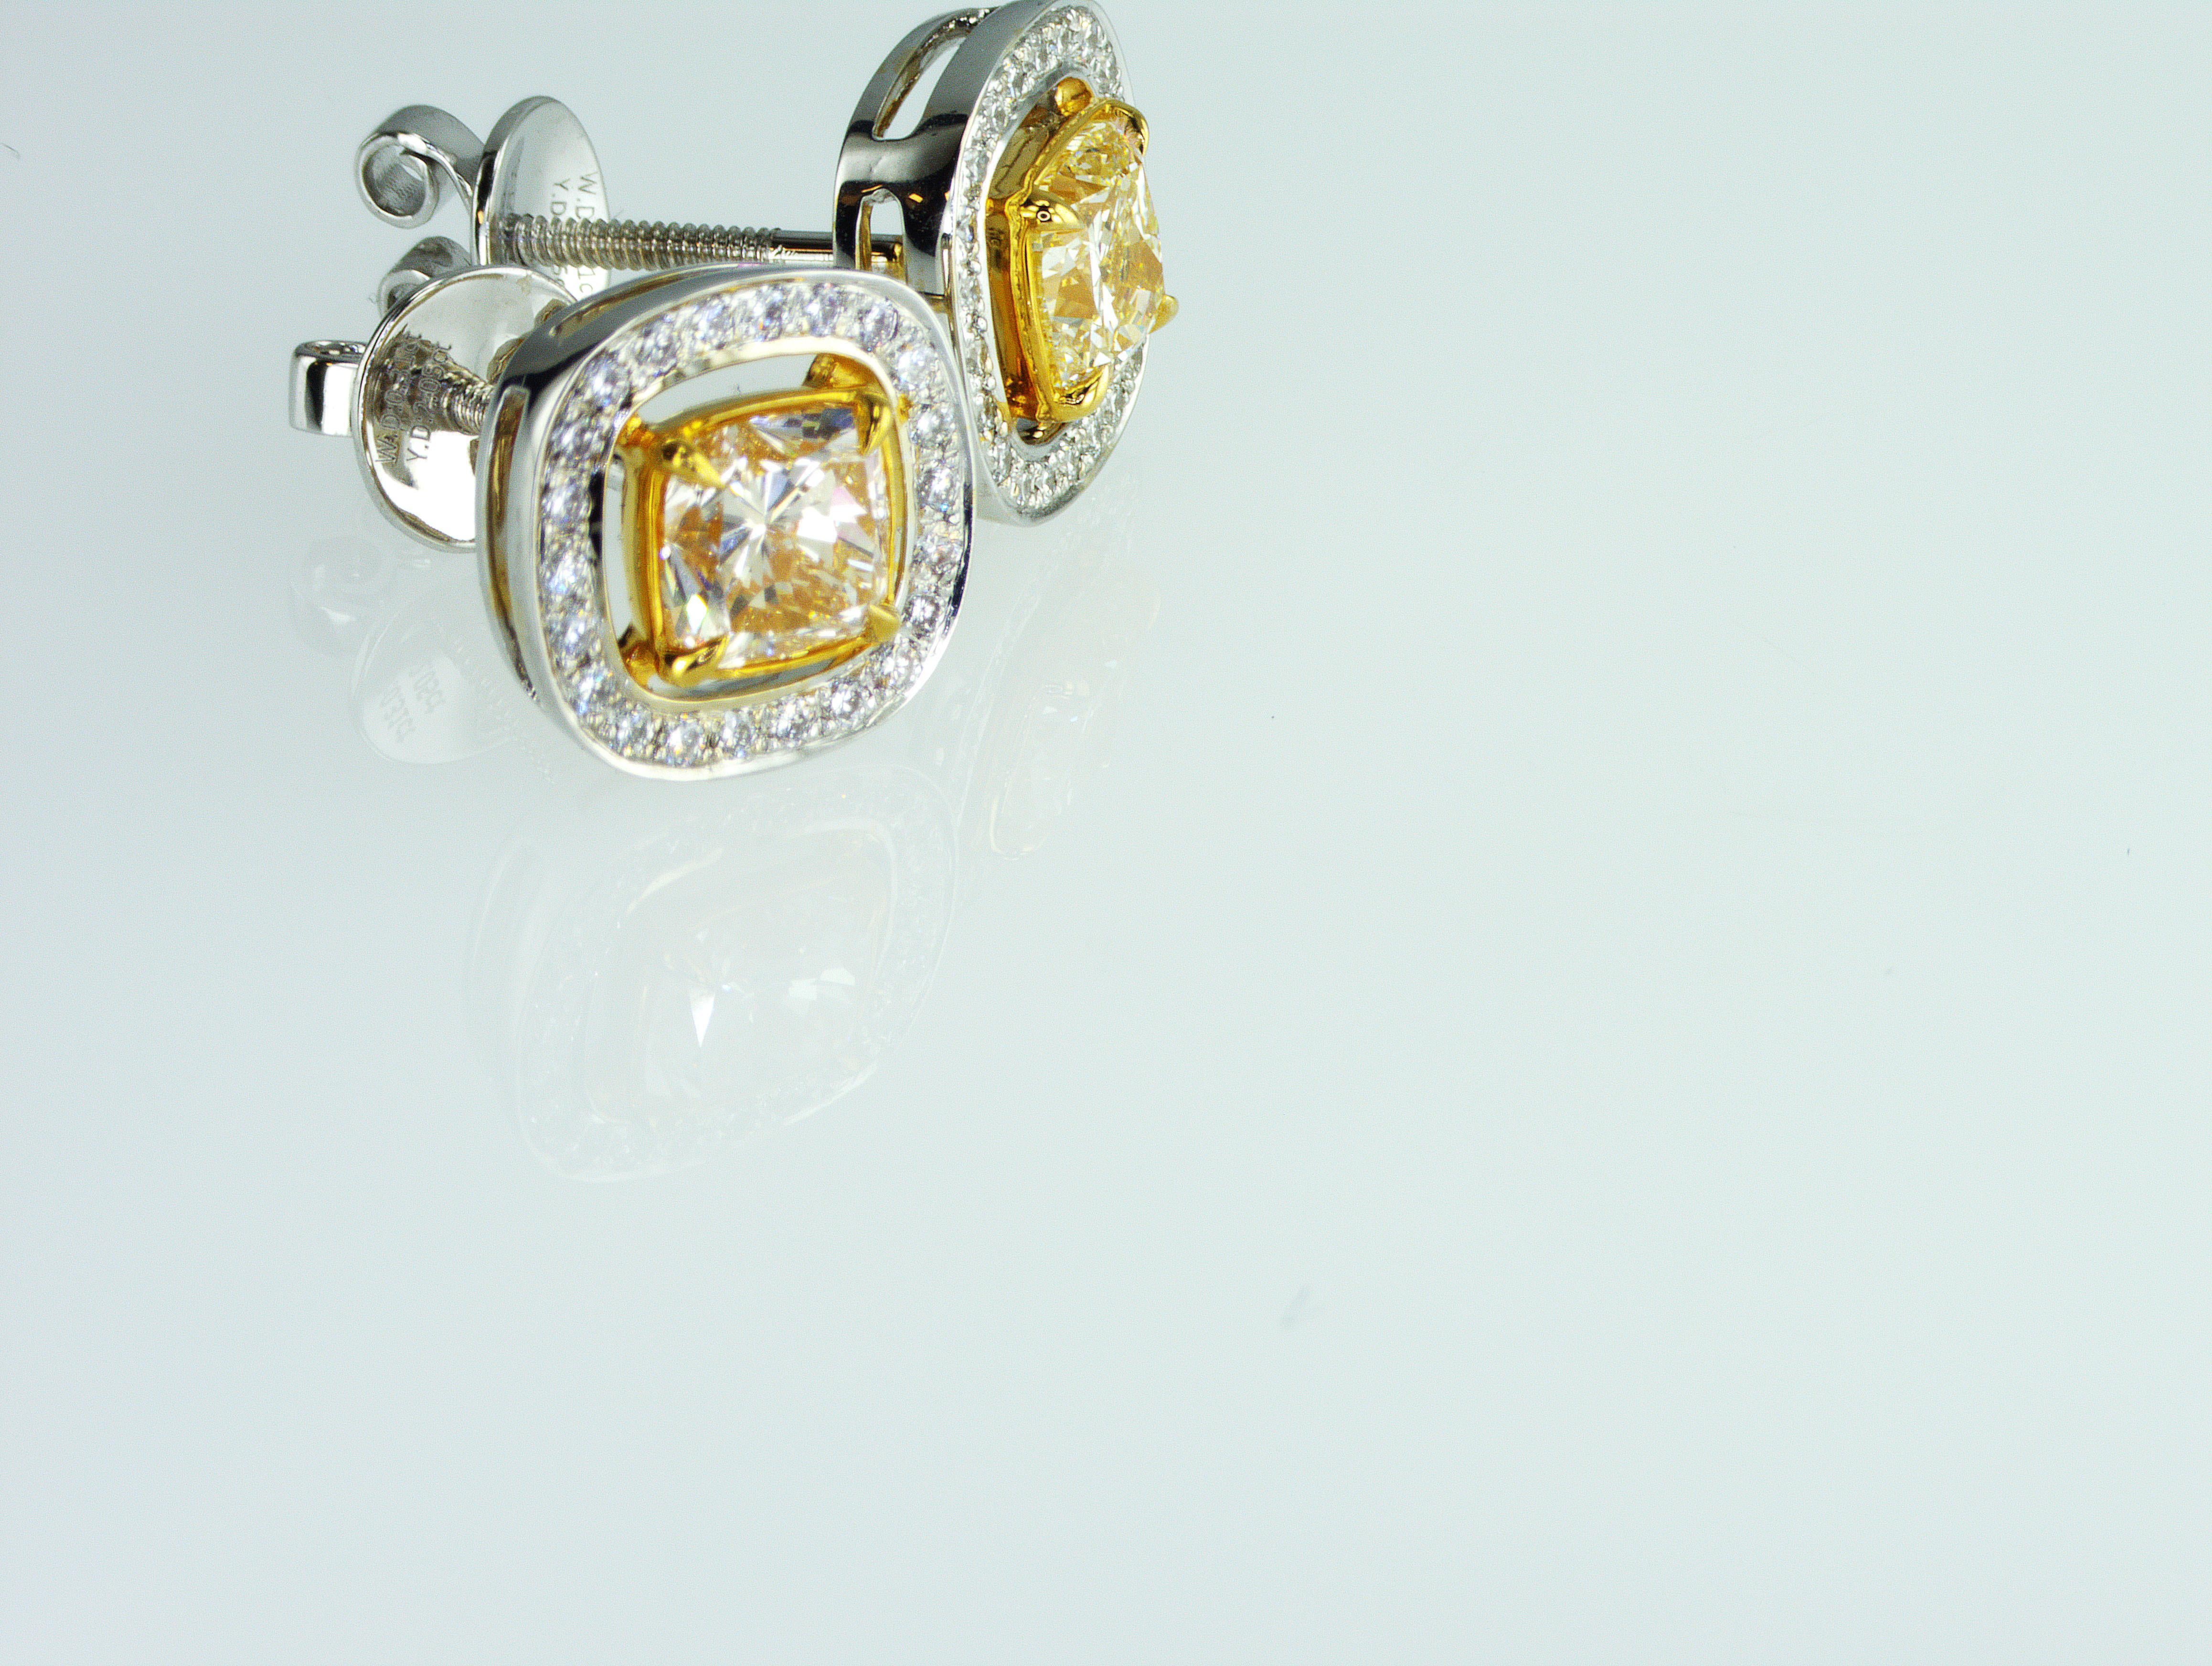 Wir sind ein Unternehmen für die Herstellung von Naturdiamanten mit Sitz in Dubai.
Diese wunderschönen IDL-zertifizierten 2,05 Karat gelben Diamanten Ohrstecker können Sie zu einem sehr guten Preis bekommen. Das Gesamtgewicht der natürlichen